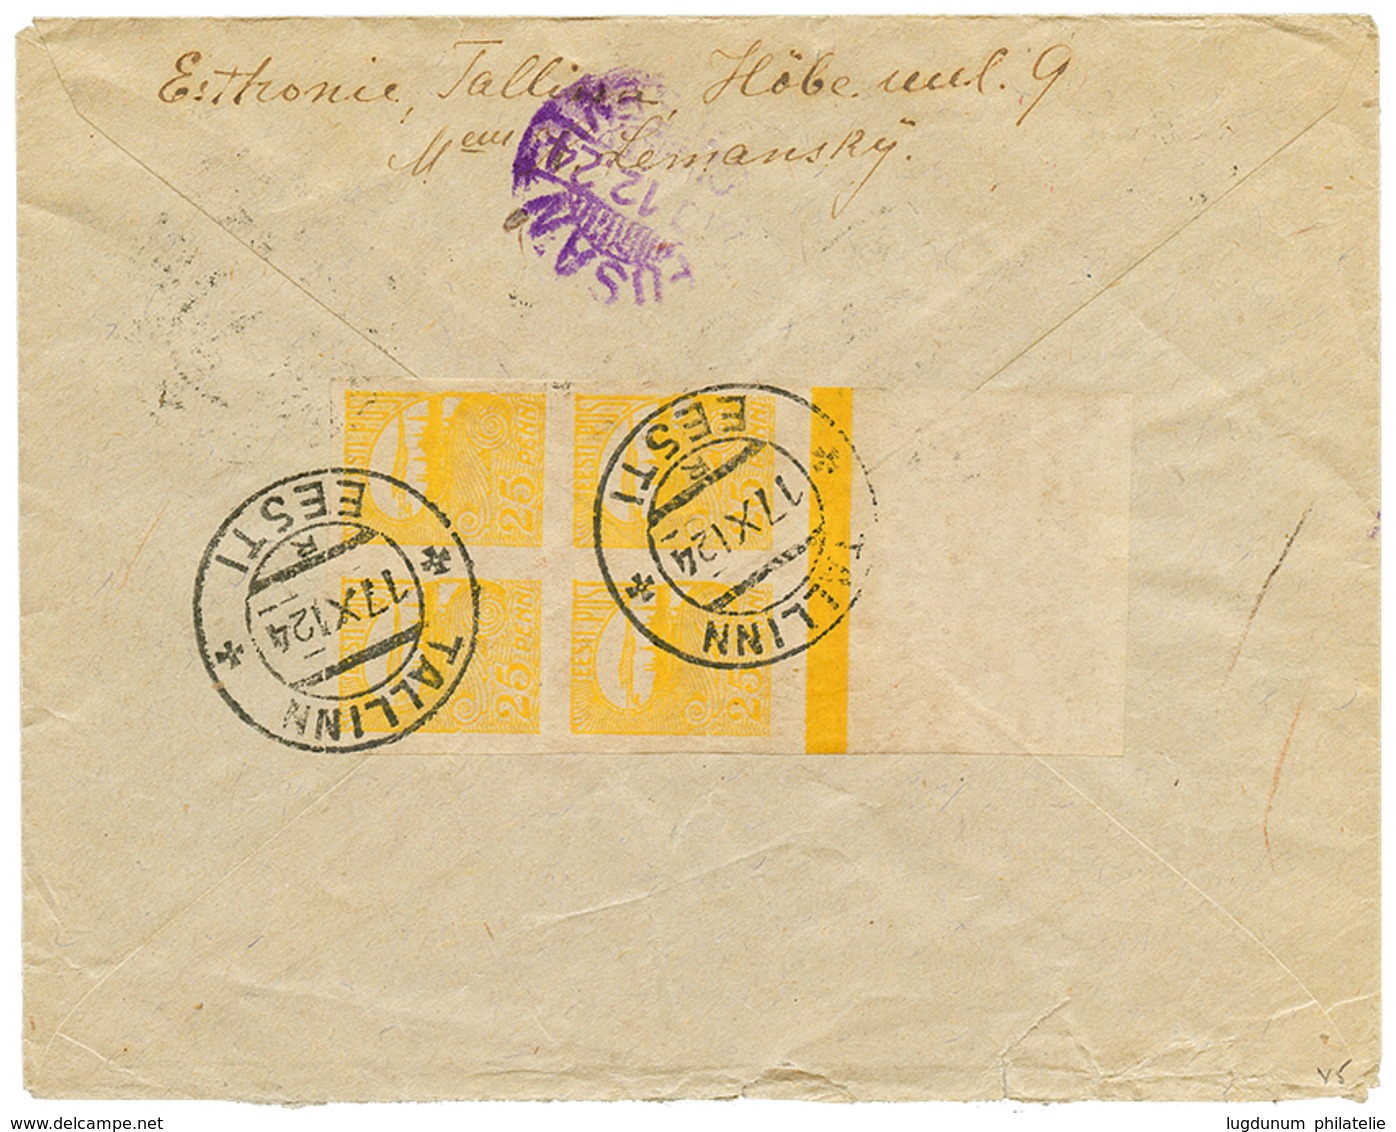 758 ESTONIA To KOREA : 1924 9m + 25p Block Of 4(reverse) Canc. TALLINN EESTI On Taxed Envelope To KINSEN KOREA. Extremel - Kreta